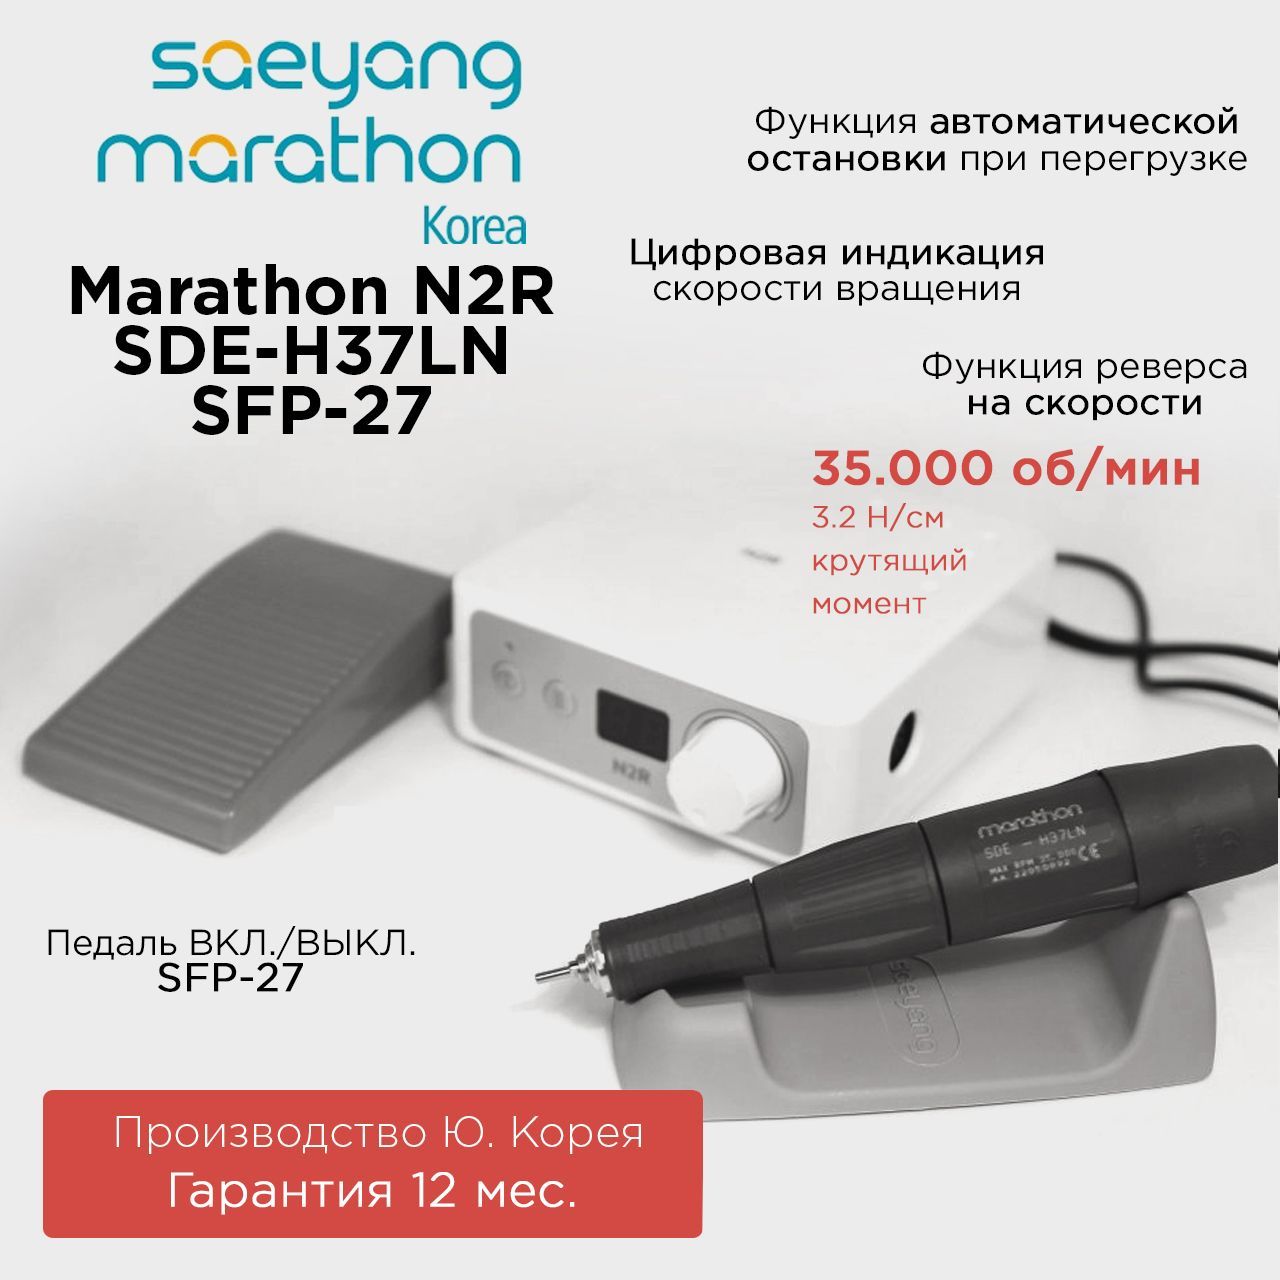 Аппарат для маникюра Marathon N2R SDE-H37LN с педалью SFP-27 obd2 hud зеркало автомобиль head up дисплей цифровая скорость проектор охранная сигнализация сша